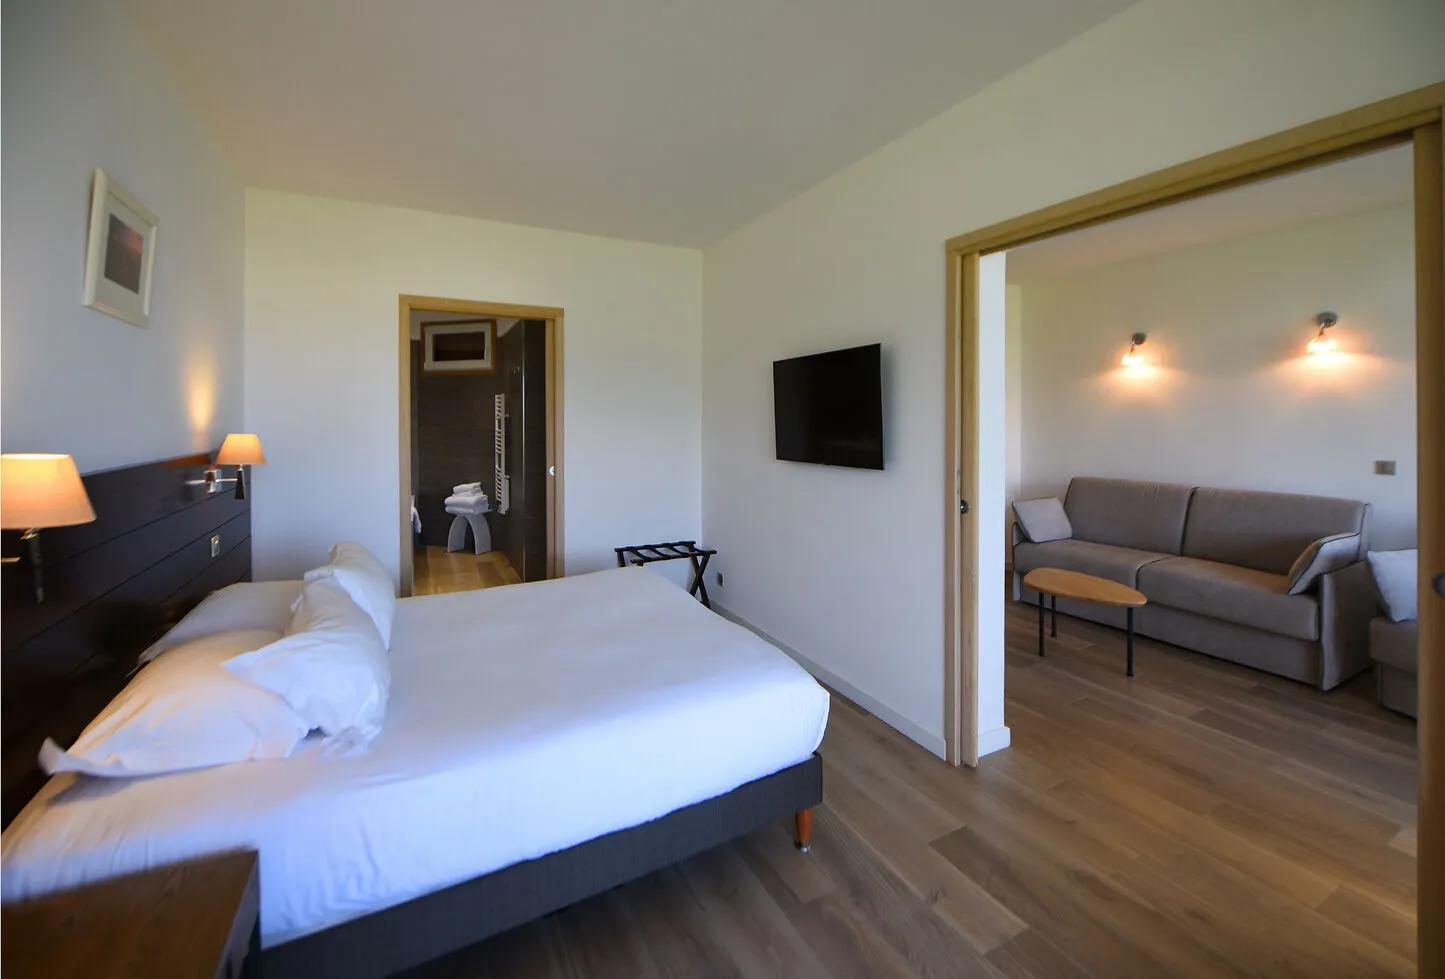 Chambre spacieuse dans les suites de l'hôtel La Roya à Saint-Florent